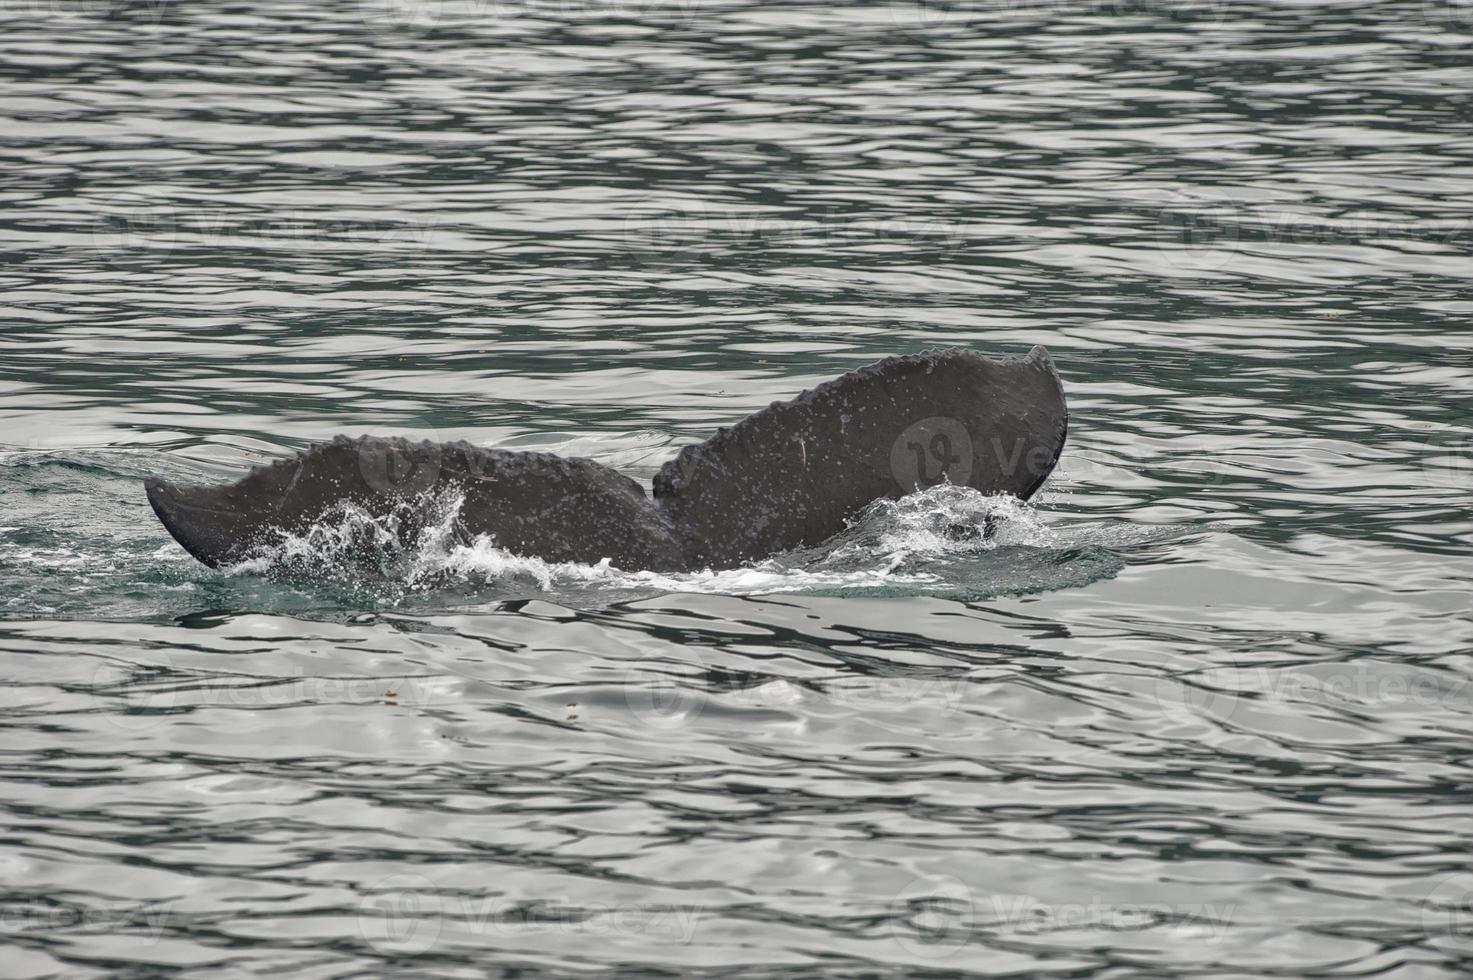 rabo de baleia jubarte enquanto desce na baía glaciar alaska foto